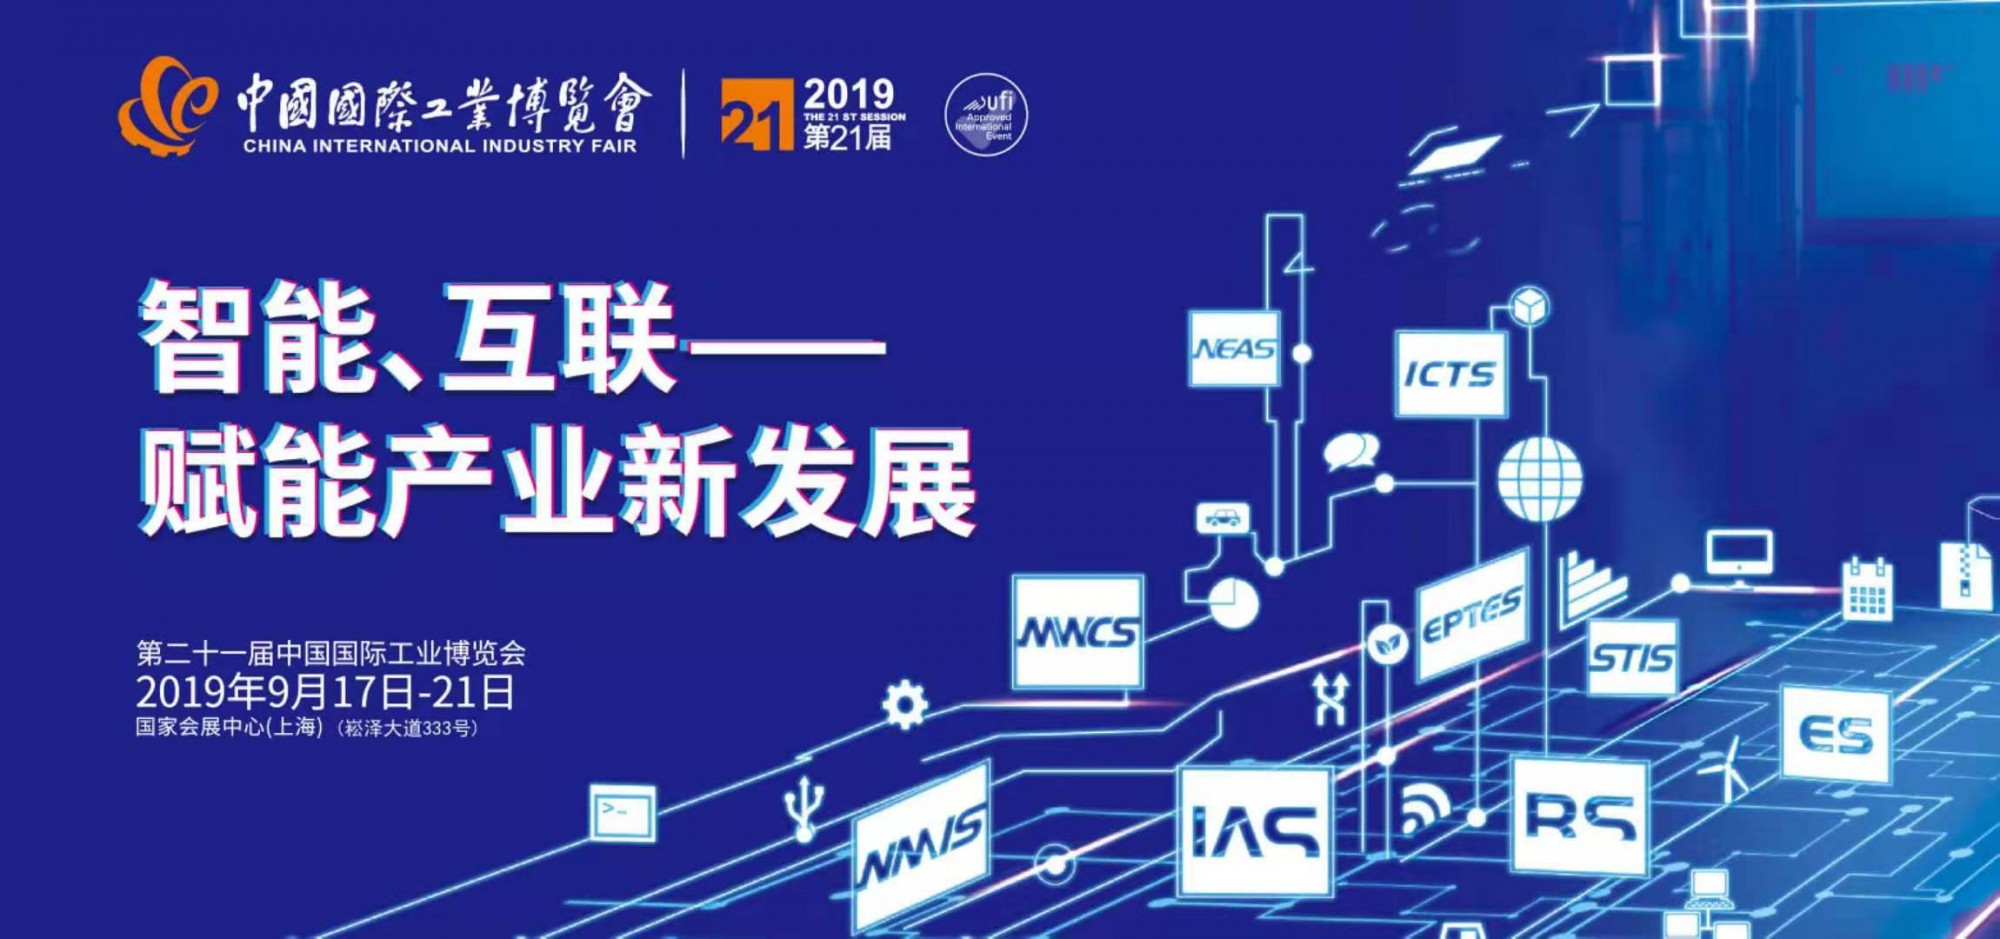 2019第21届中国国际工业博览会